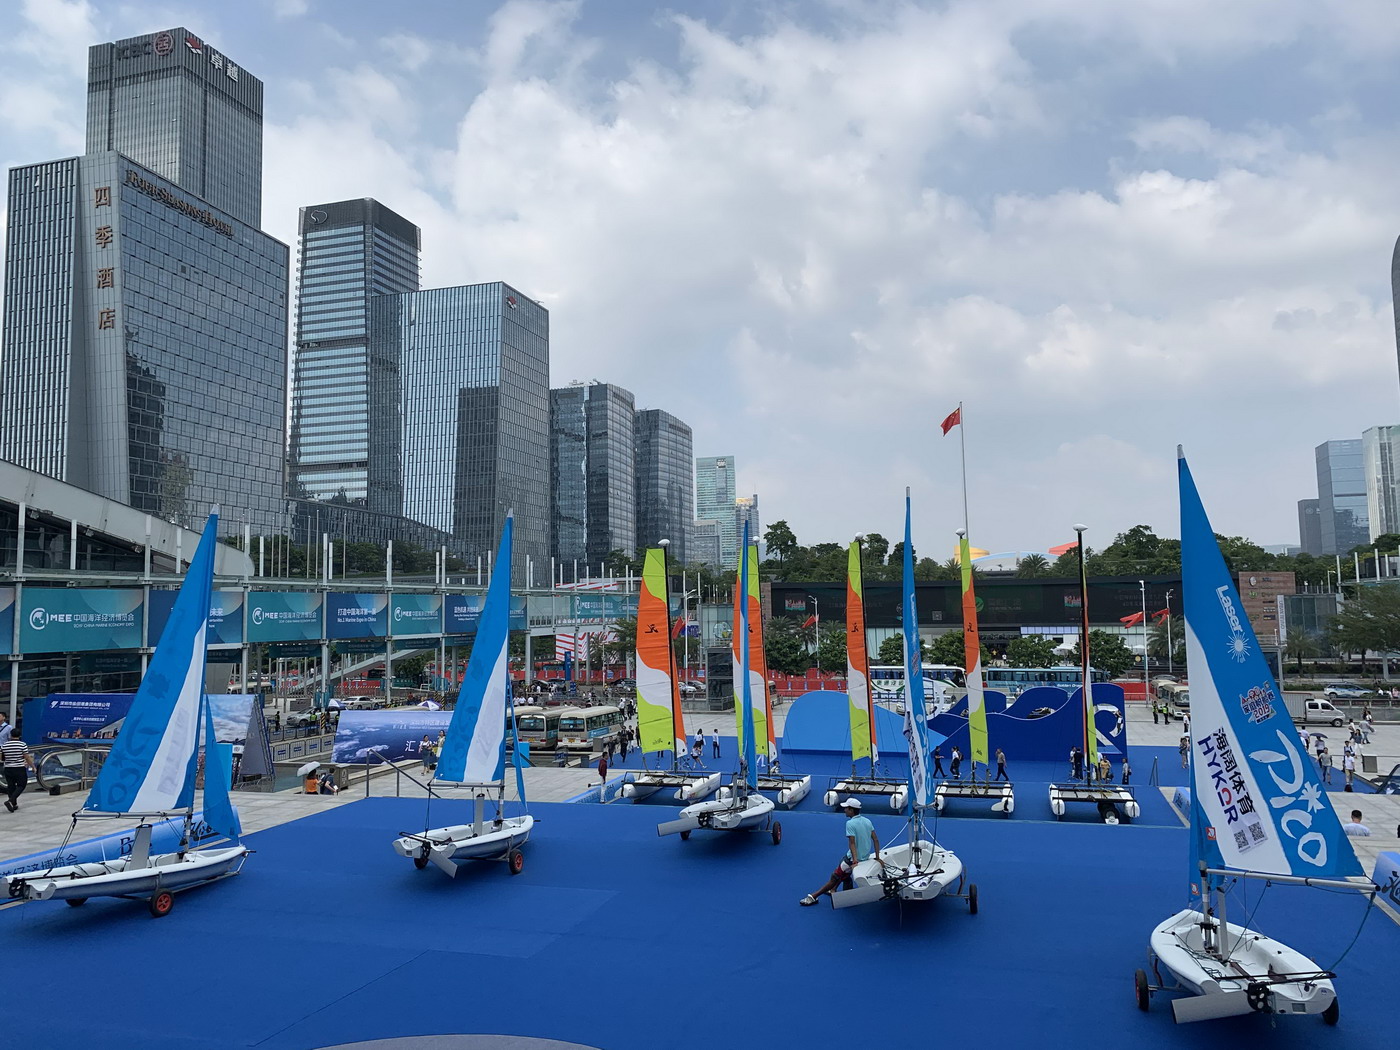 深圳海博会将于10月在深开幕，主题为“海洋发展史” 展会新闻 第2张